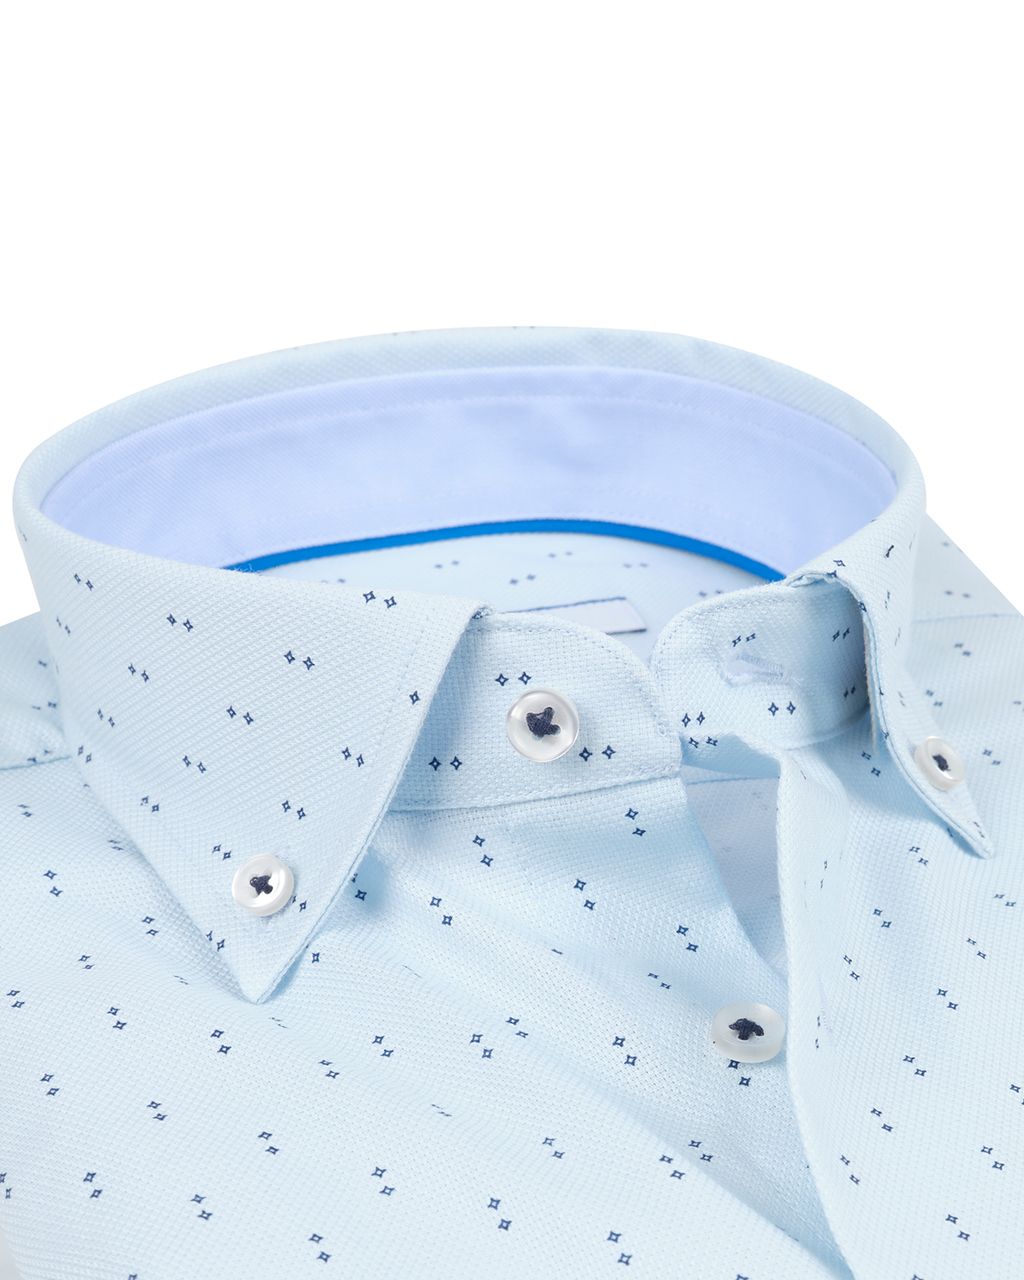 The BLUEPRINT Premium Trendy Overhemd LM Lichtblauw dessin 078407-001-L